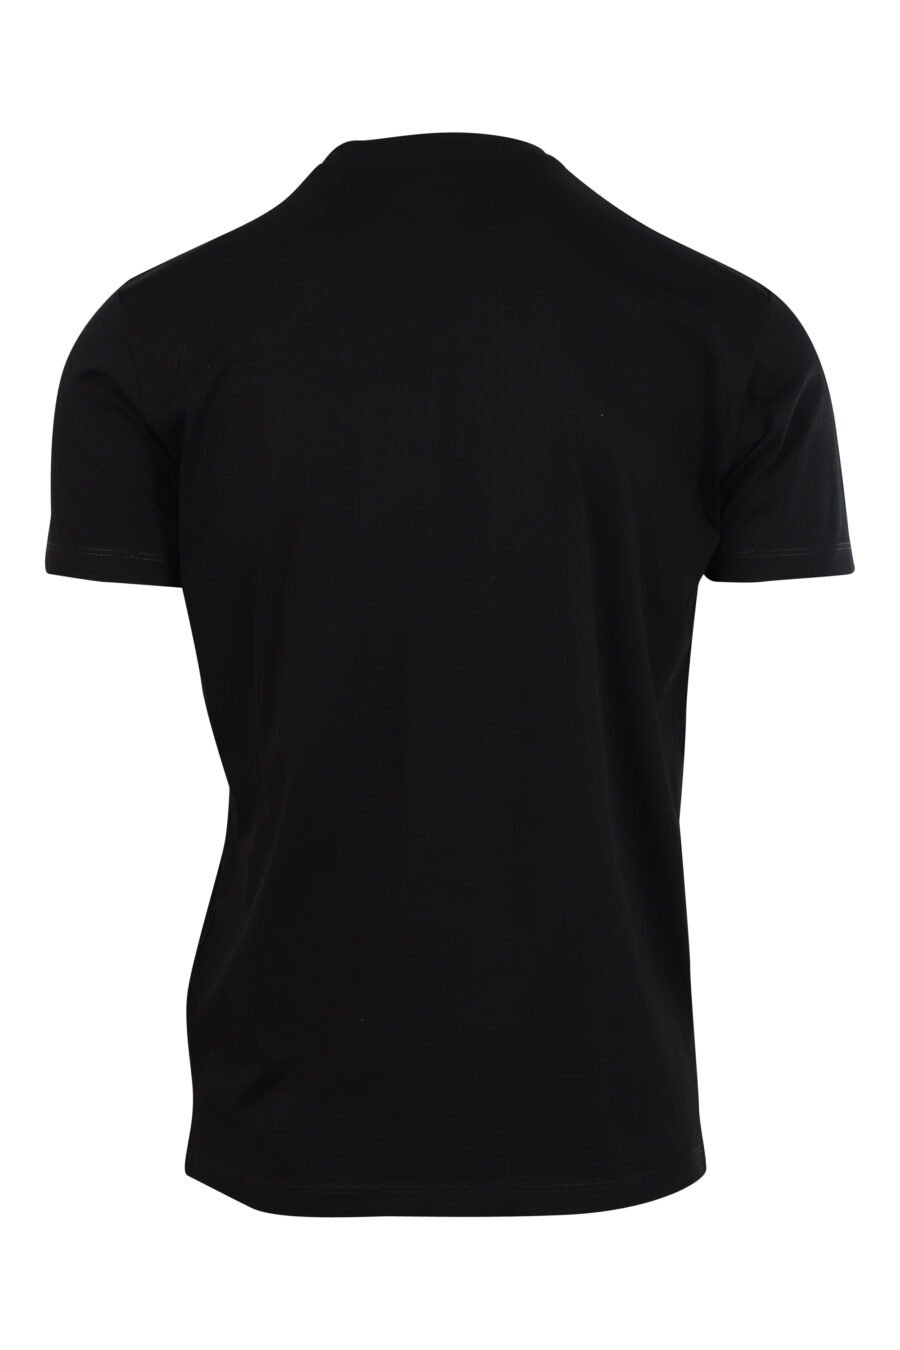 T-shirt preta com maxilogo gráfico em forma de folha - 8052134941010 2